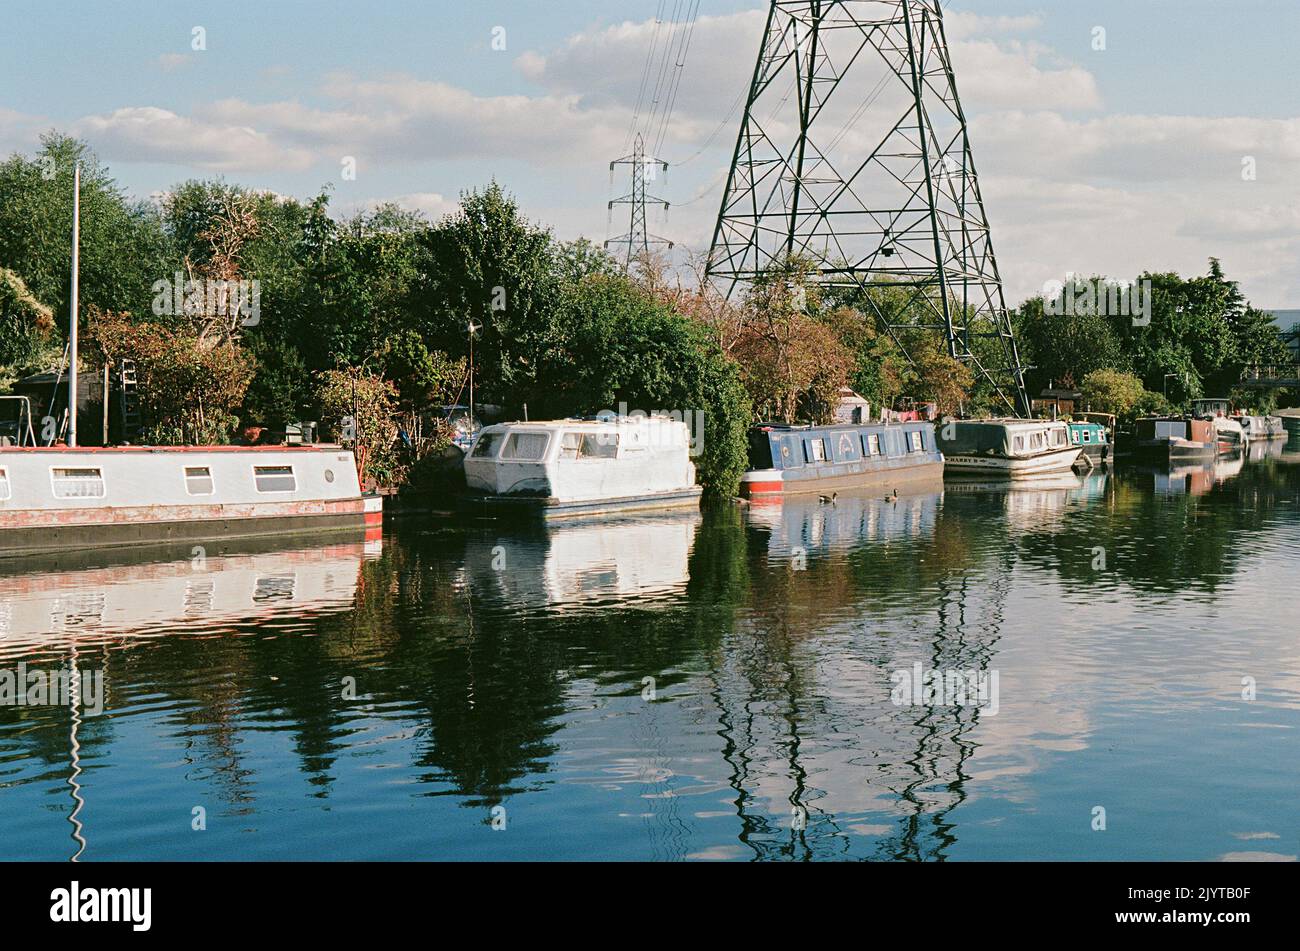 Bateaux le long de la rivière Lea sur les marais de Tottenham, dans le nord de Londres, en été Banque D'Images